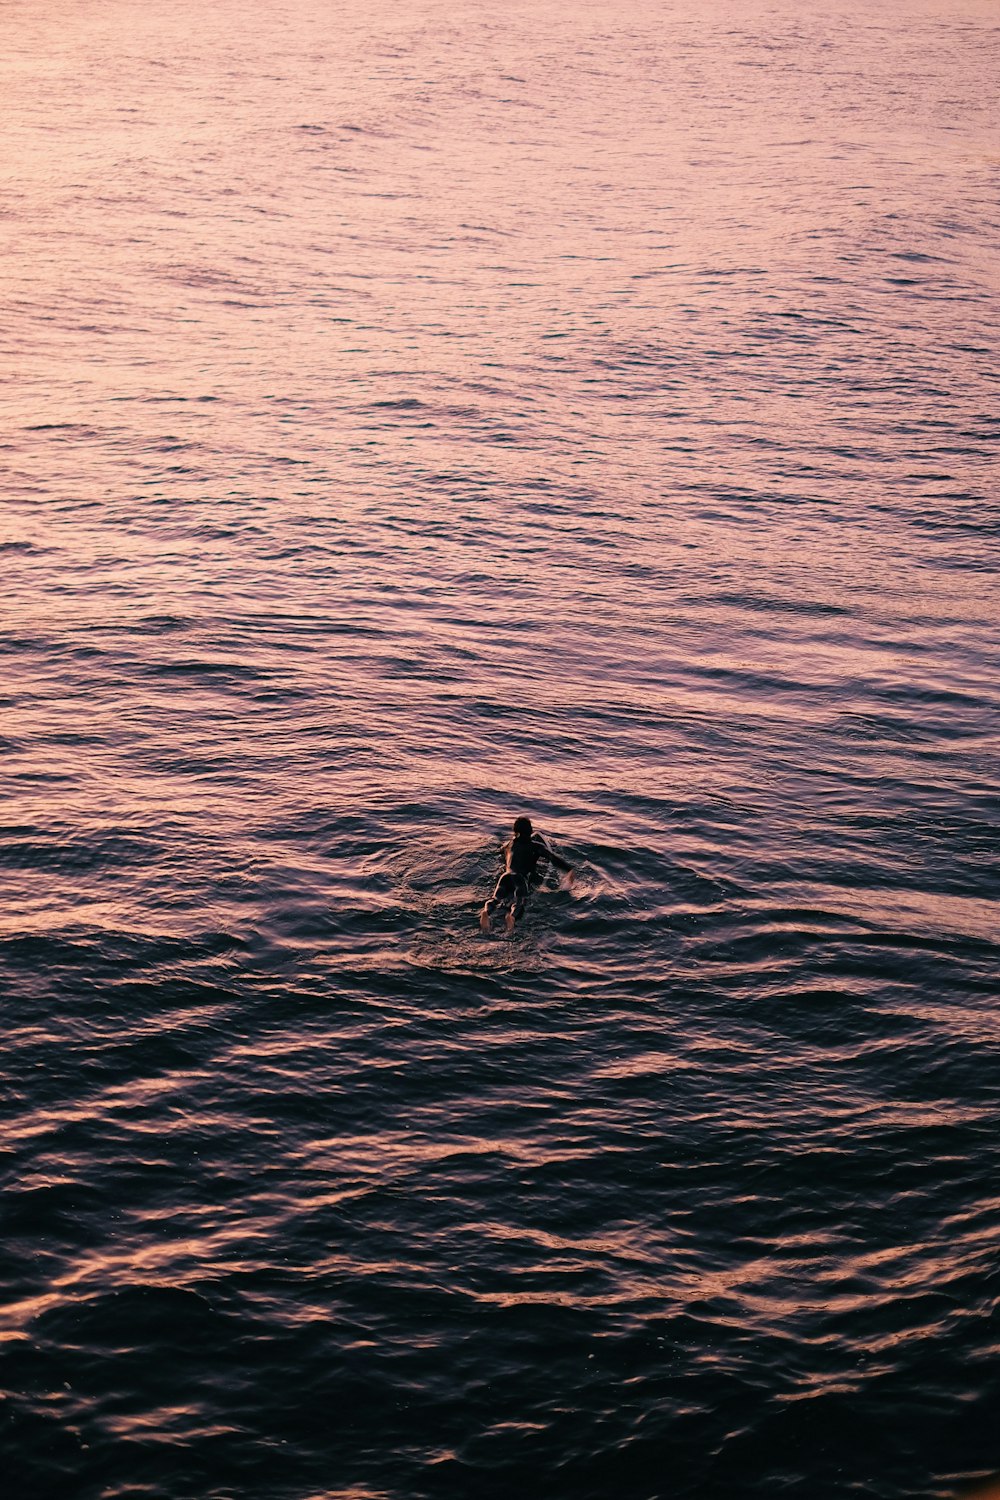 uma pessoa nadando no oceano ao pôr do sol